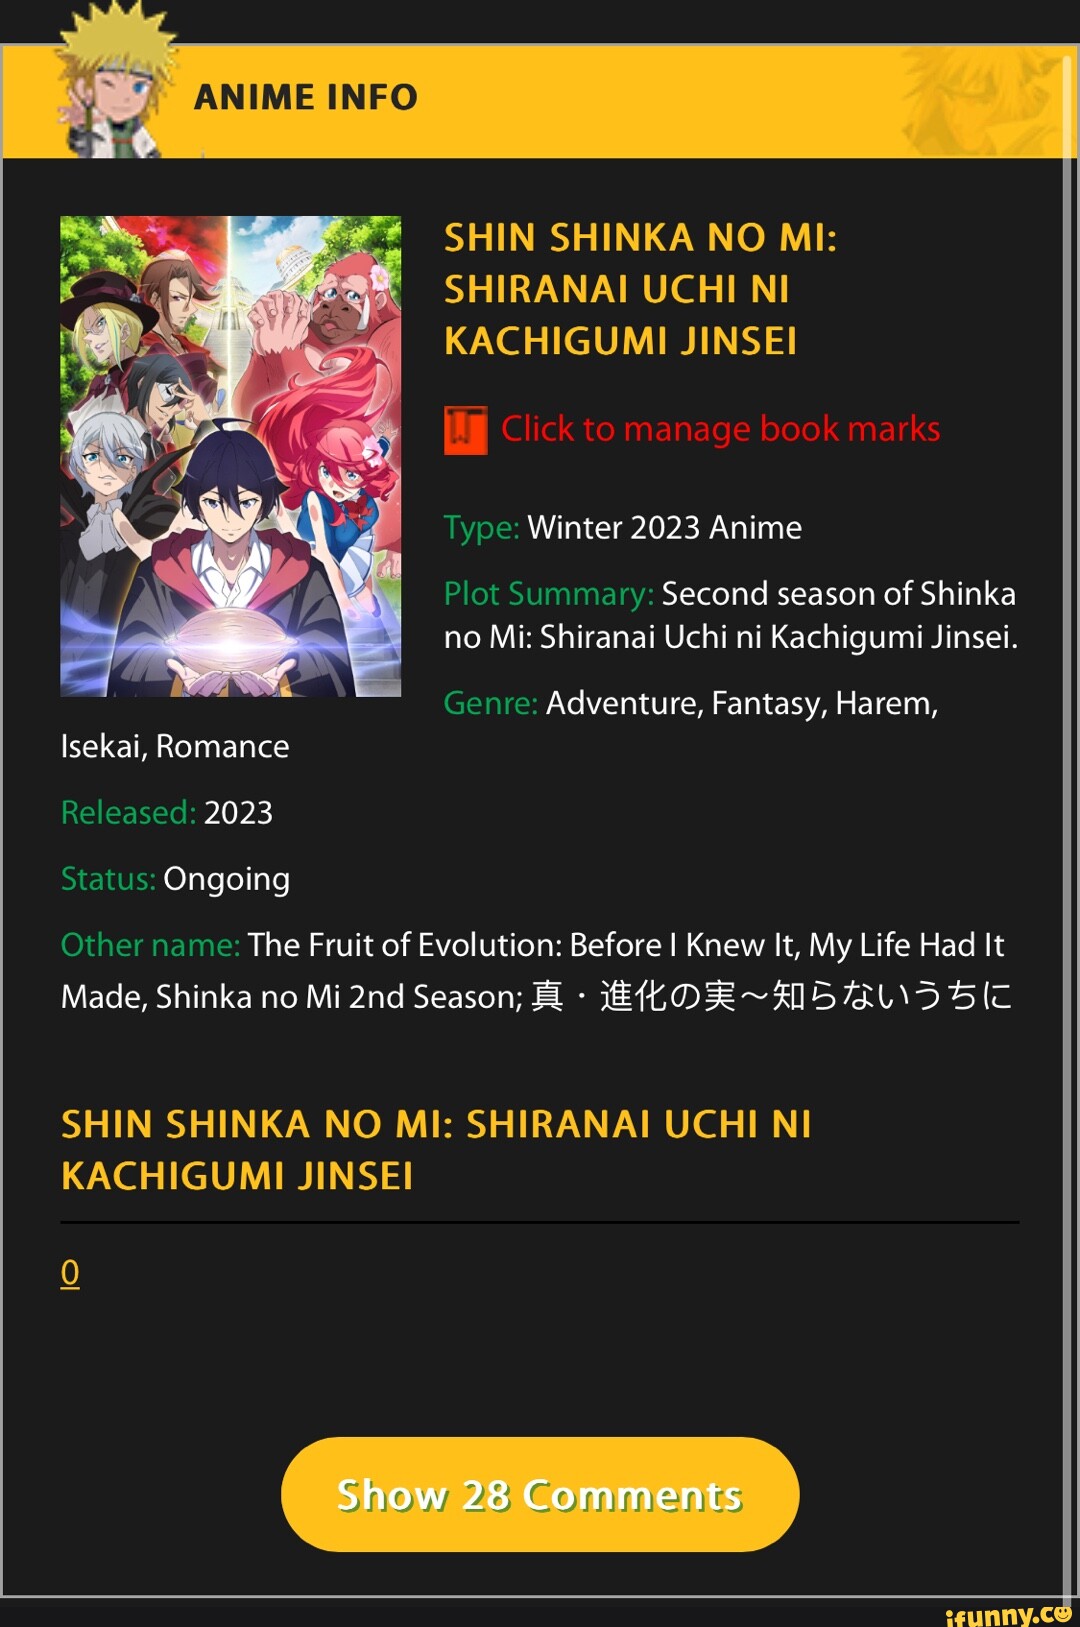 Shin Shinka no Mi: Shiranai Uchi ni Kachigumi Jinsei Official